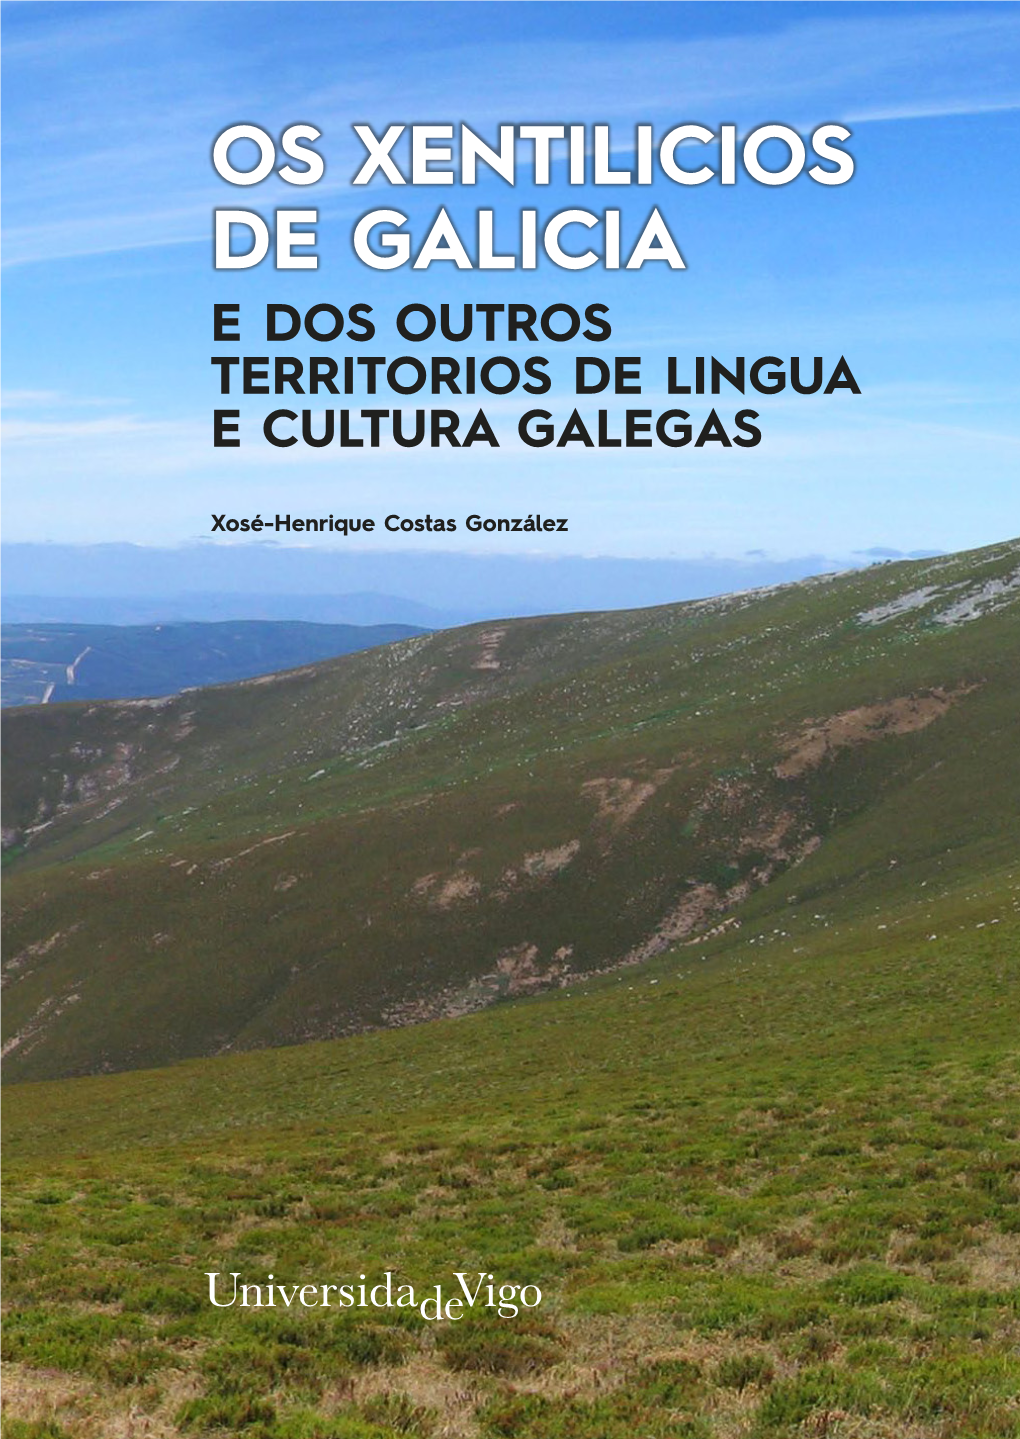 Os Xentilicios De Galicia E Dos Outros Territorios De Lingua E Cultura Galegas